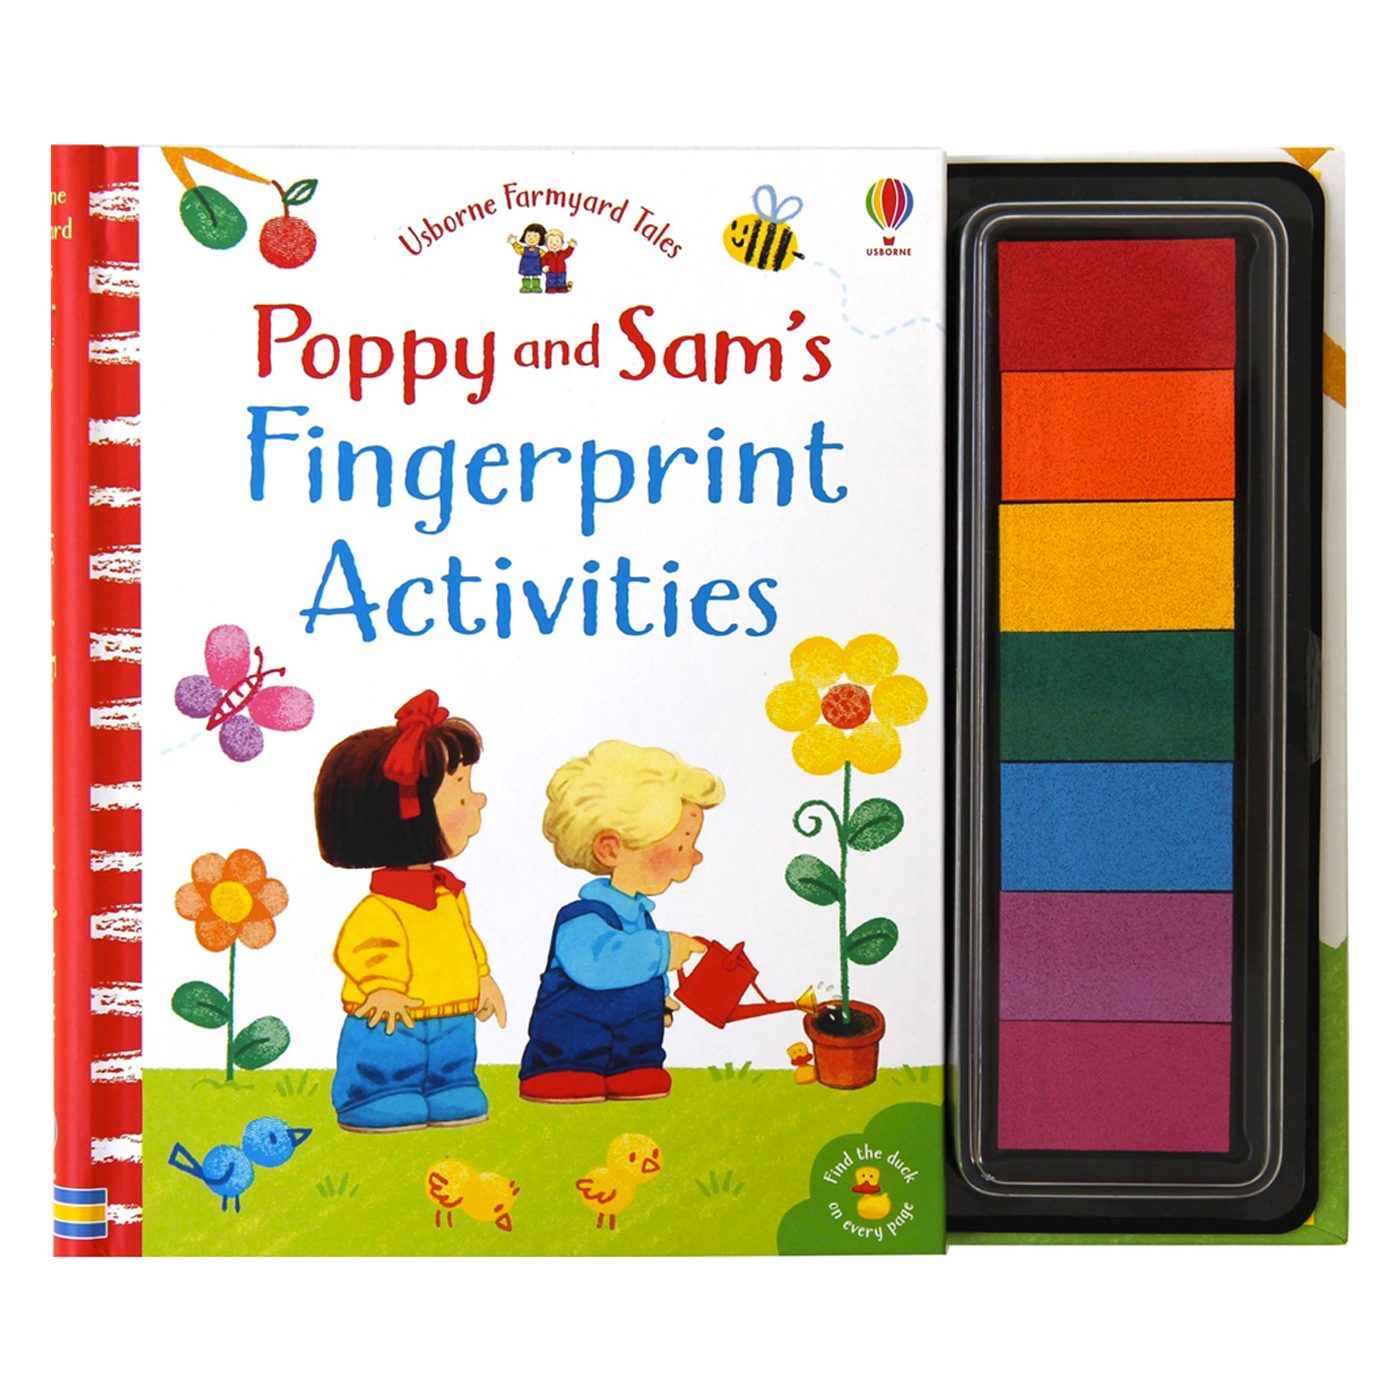  Poppy and Sam's Fingerprint Activities